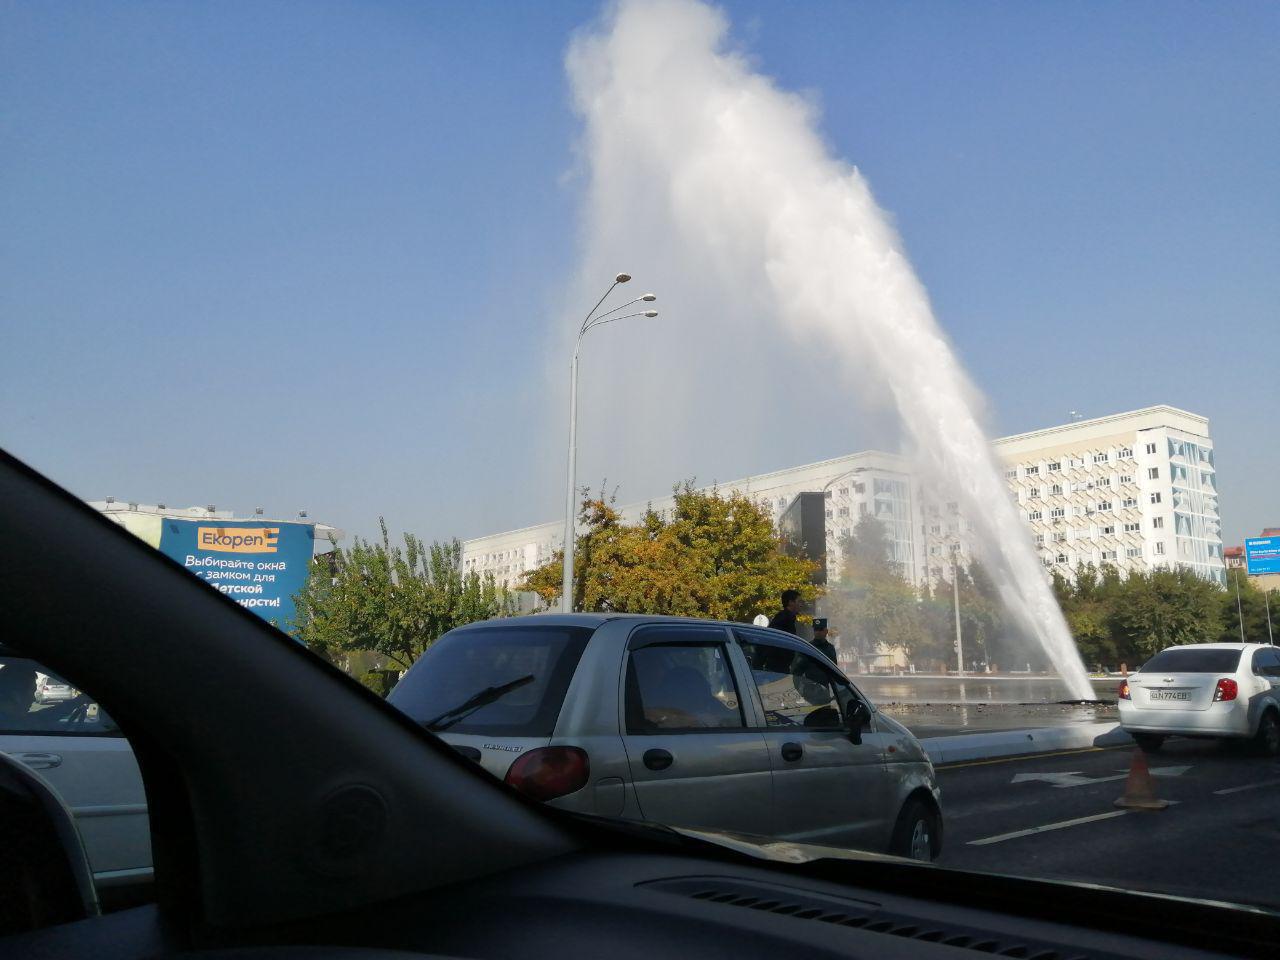 В Ташкенте на Нукусской улице прорвало трубу с горячей водой